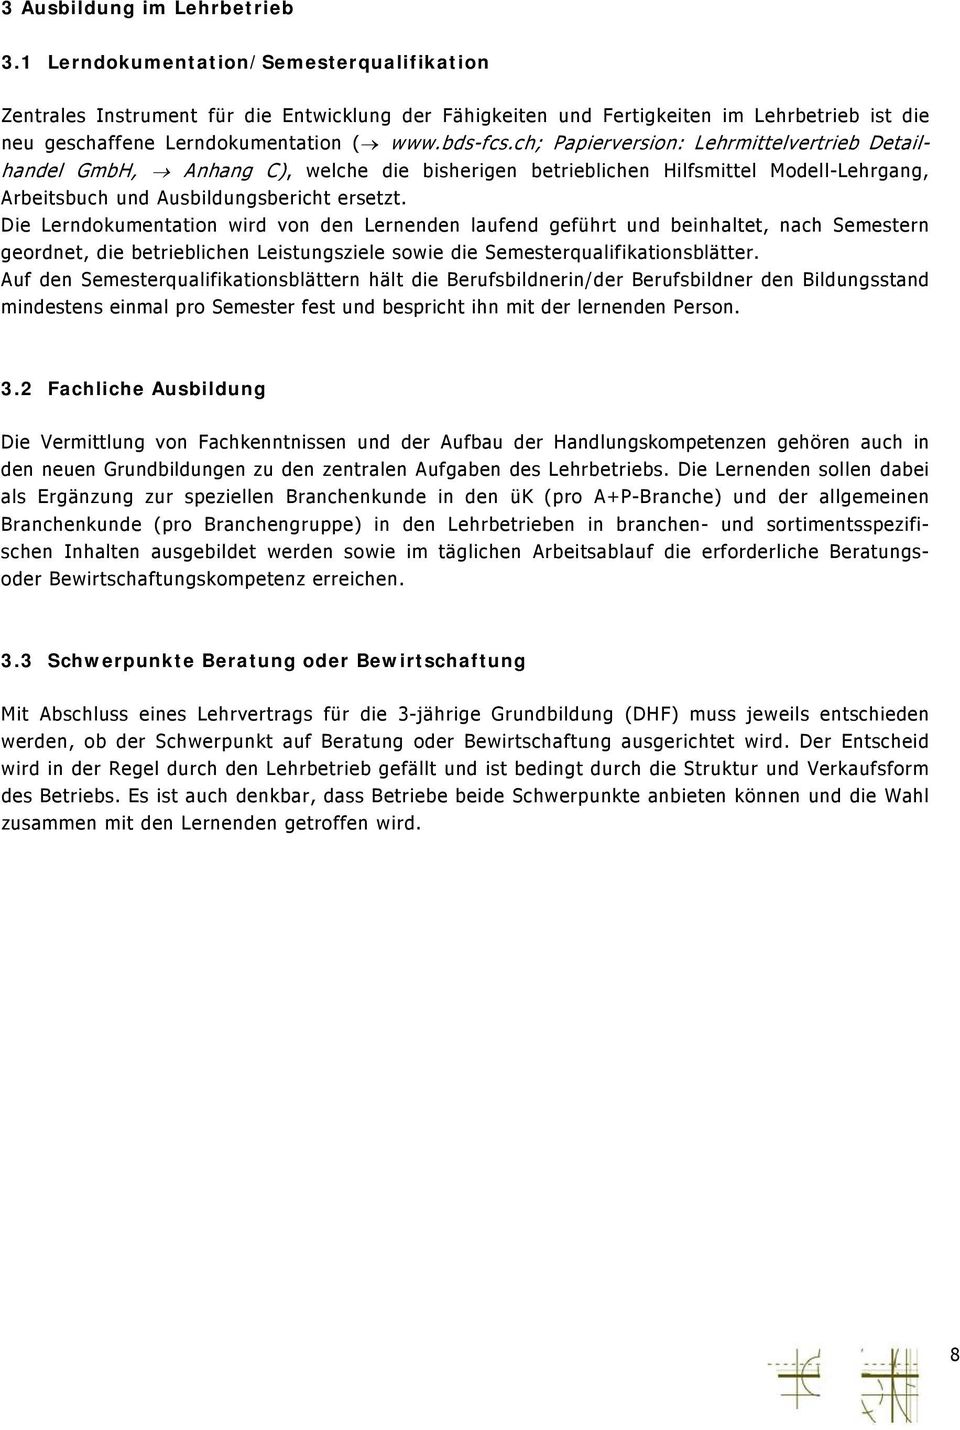 ch; Papierversion: Lehrmittelvertrieb Detailhande l GmbH, Anhang C), welche die bisherigen betrieblichen Hilfsmittel Modell-Lehrgang, Arbeitsbuch und Ausbildungsbericht ersetzt.